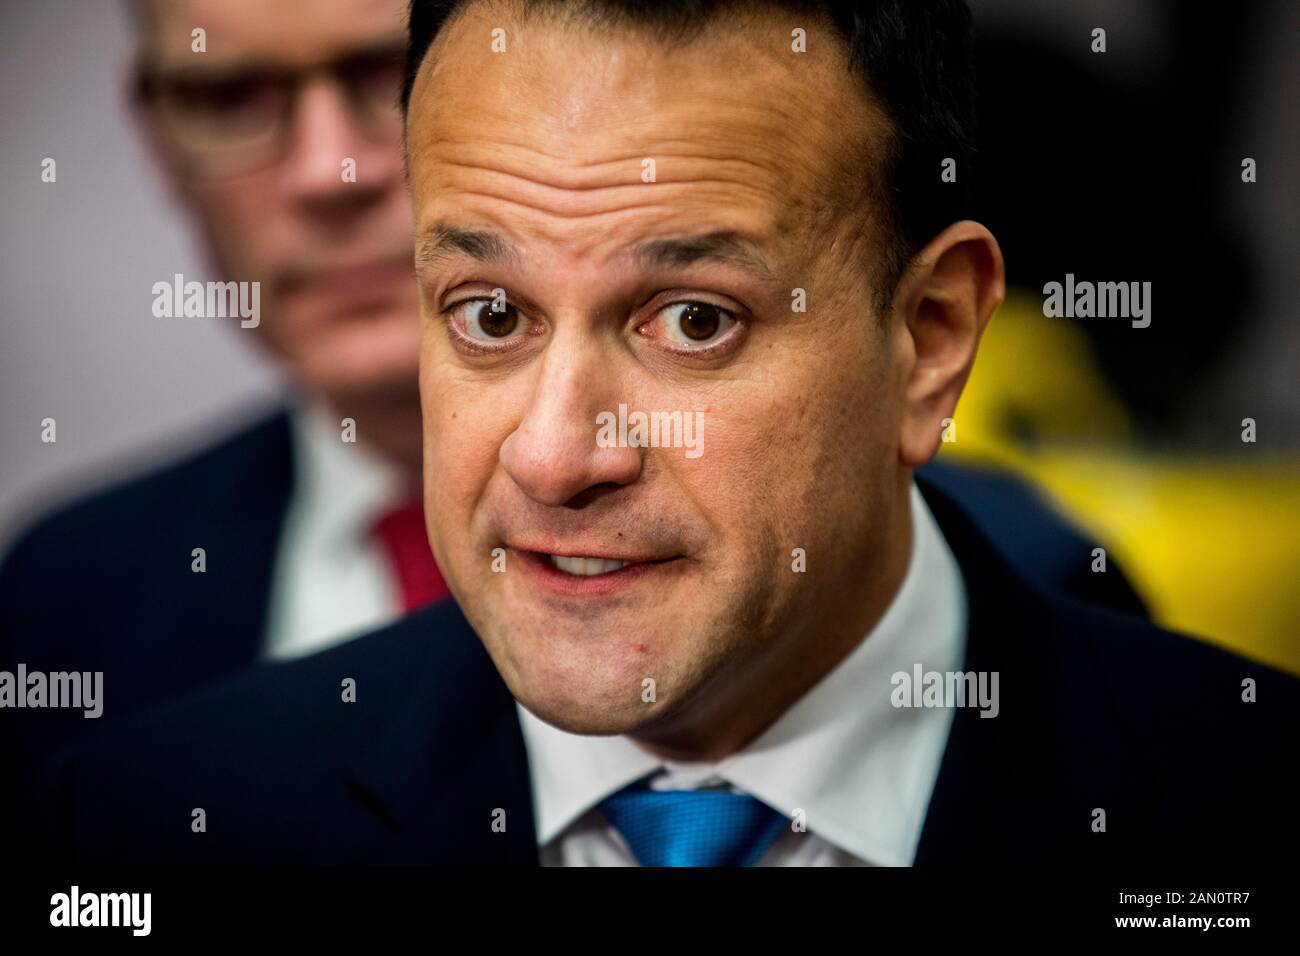 Taoiseach Leo Varadkar (centro) rispondere alle domande dei media durante una fotocellula a Combilift ad Annahagh, Co. Monaghan per lanciare la campagna elettorale generale fine Gael. Foto Stock